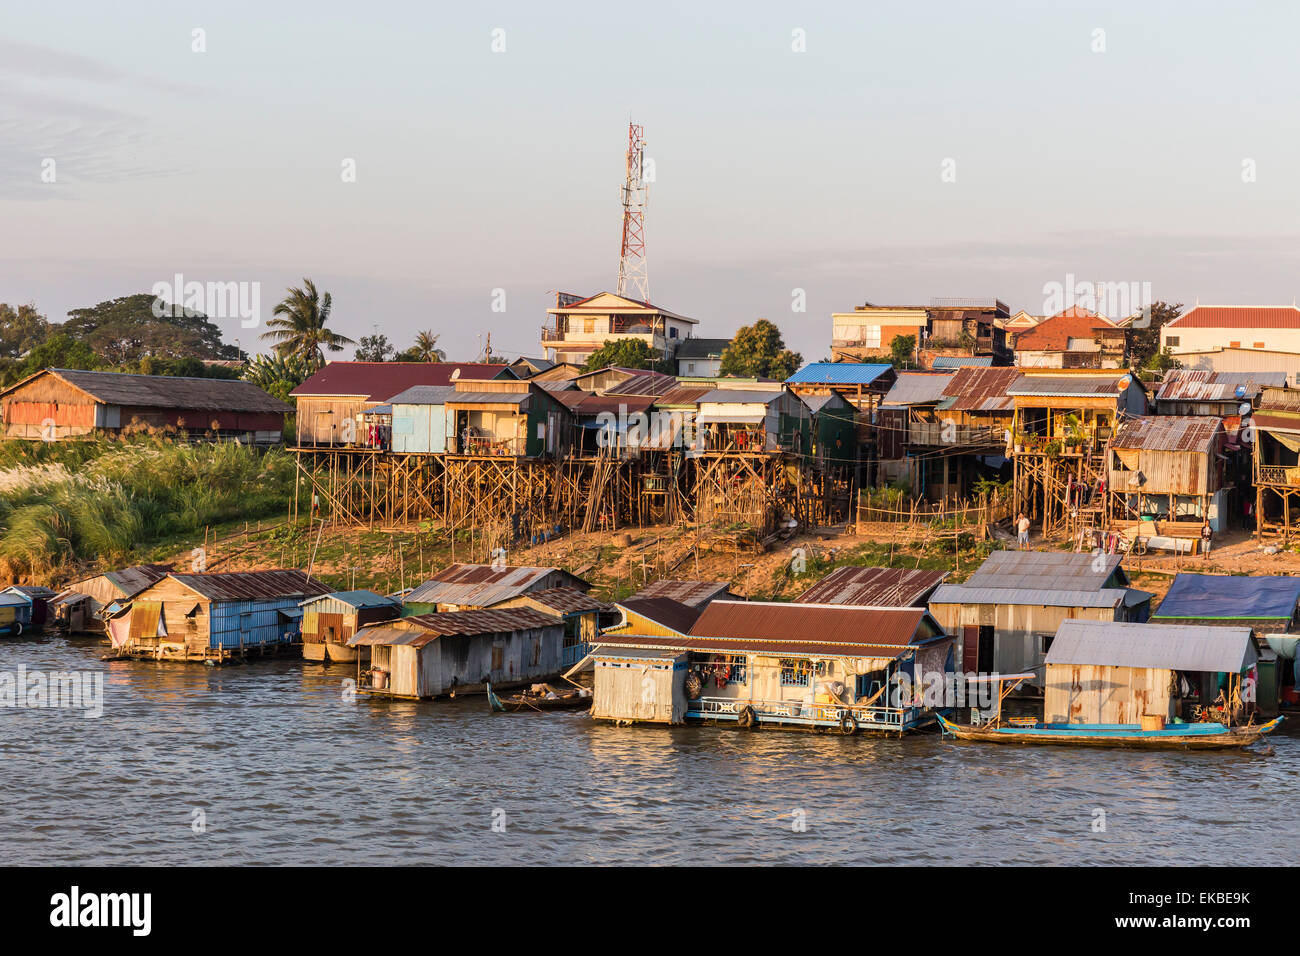 La vida a lo largo del Río Mekong, acercándose a la ciudad capital de Phnom Penh, Camboya, en Indochina, en el sudeste de Asia, Asia Foto de stock